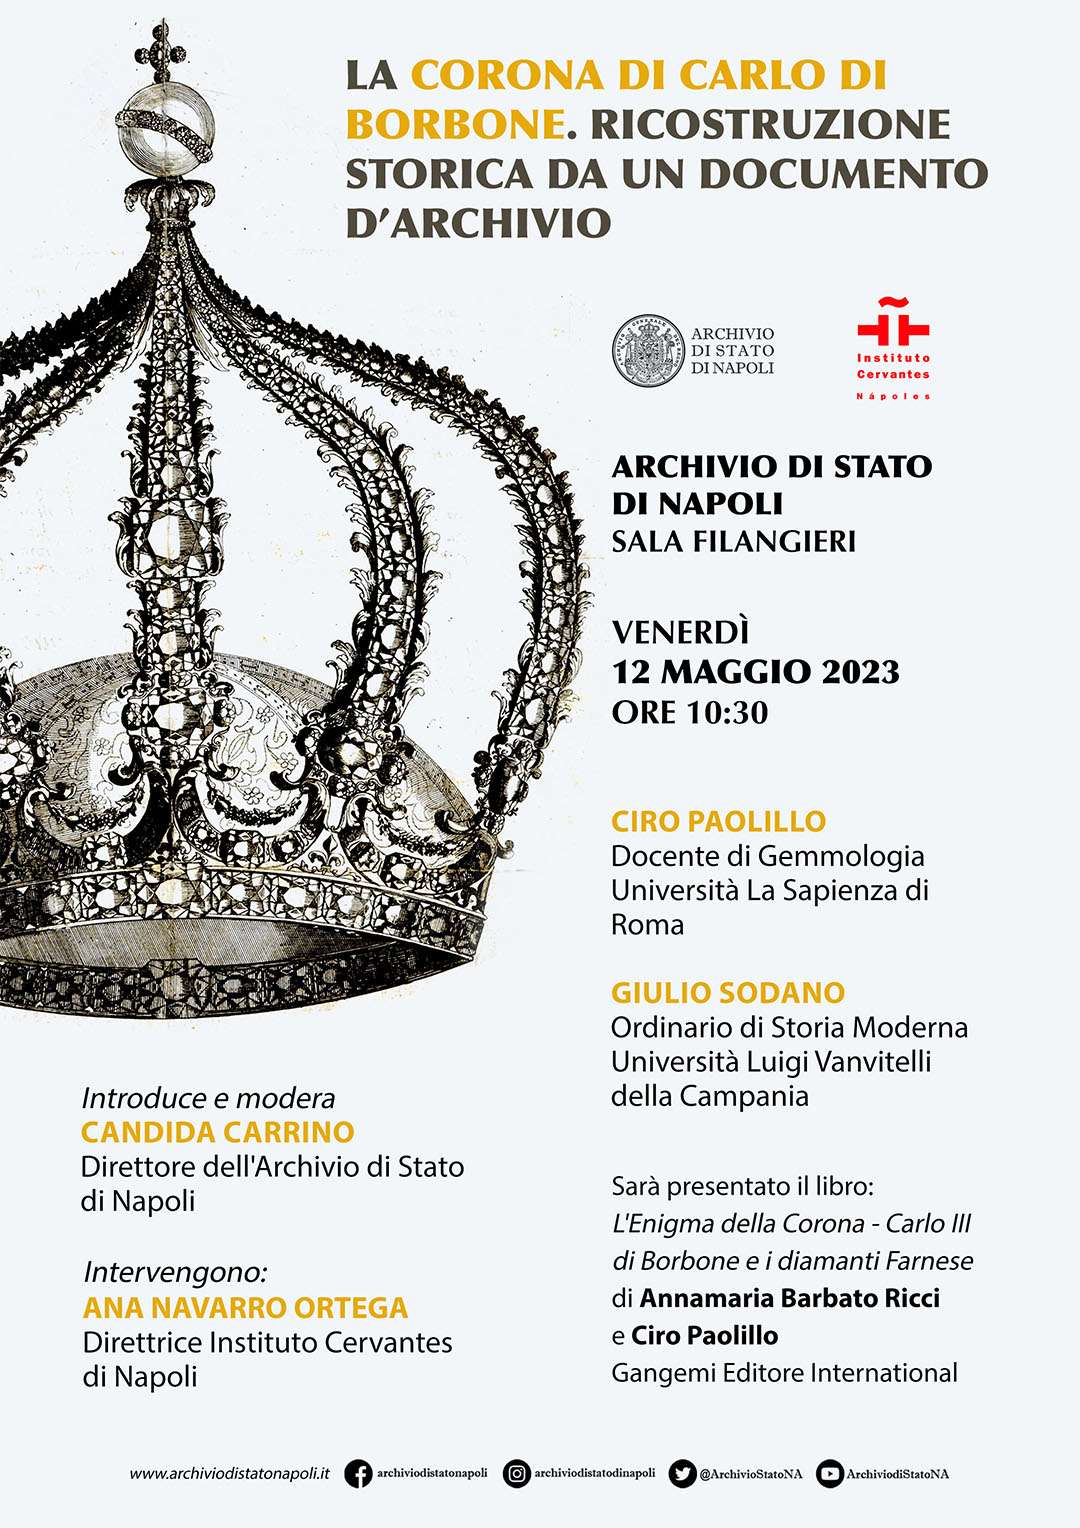 La corona di Carlo di Borbone". Ricostruzione storica da un documento d'archivio  - Napoli Village - Quotidiano di Informazioni Online